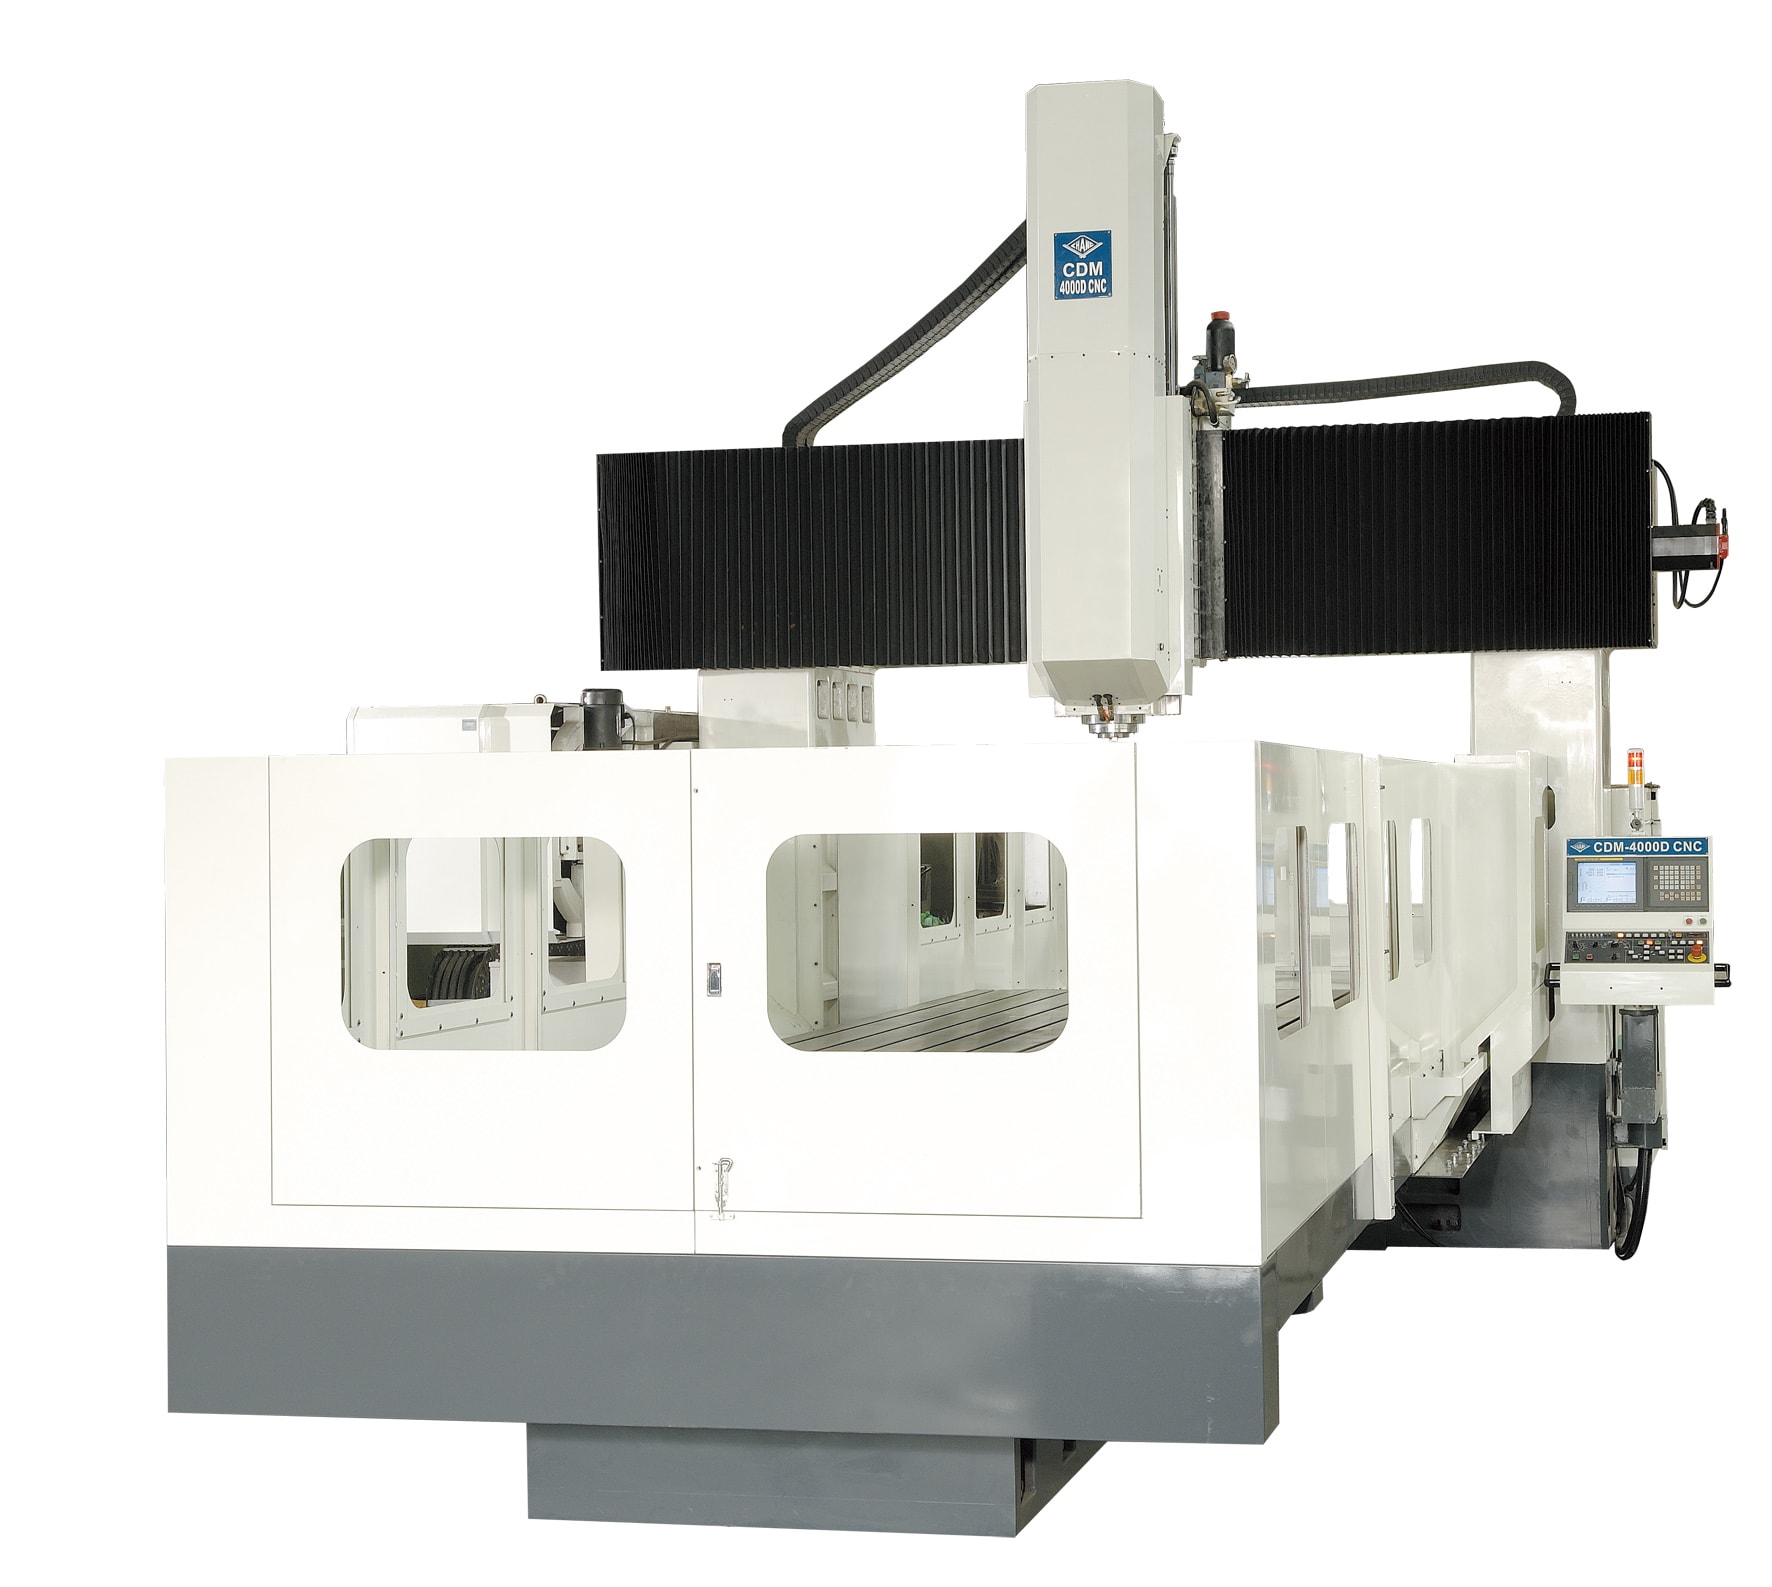 CHANG CDM Series CNC Gantry Type Machining Center